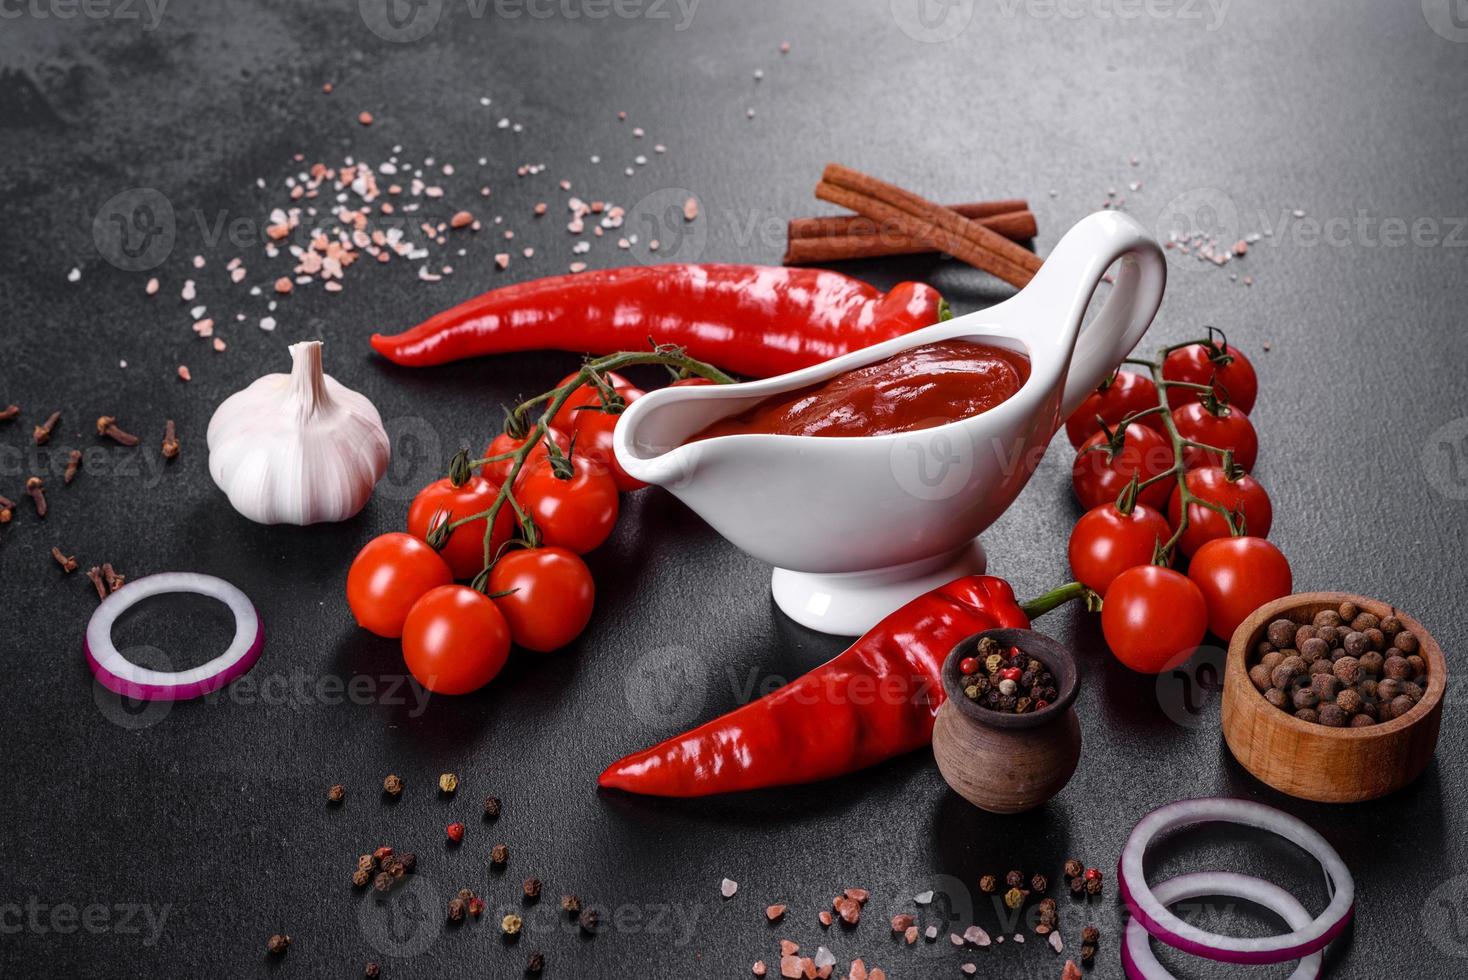 röd sås eller ketchup i en skål och ingredienser för matlagning foto